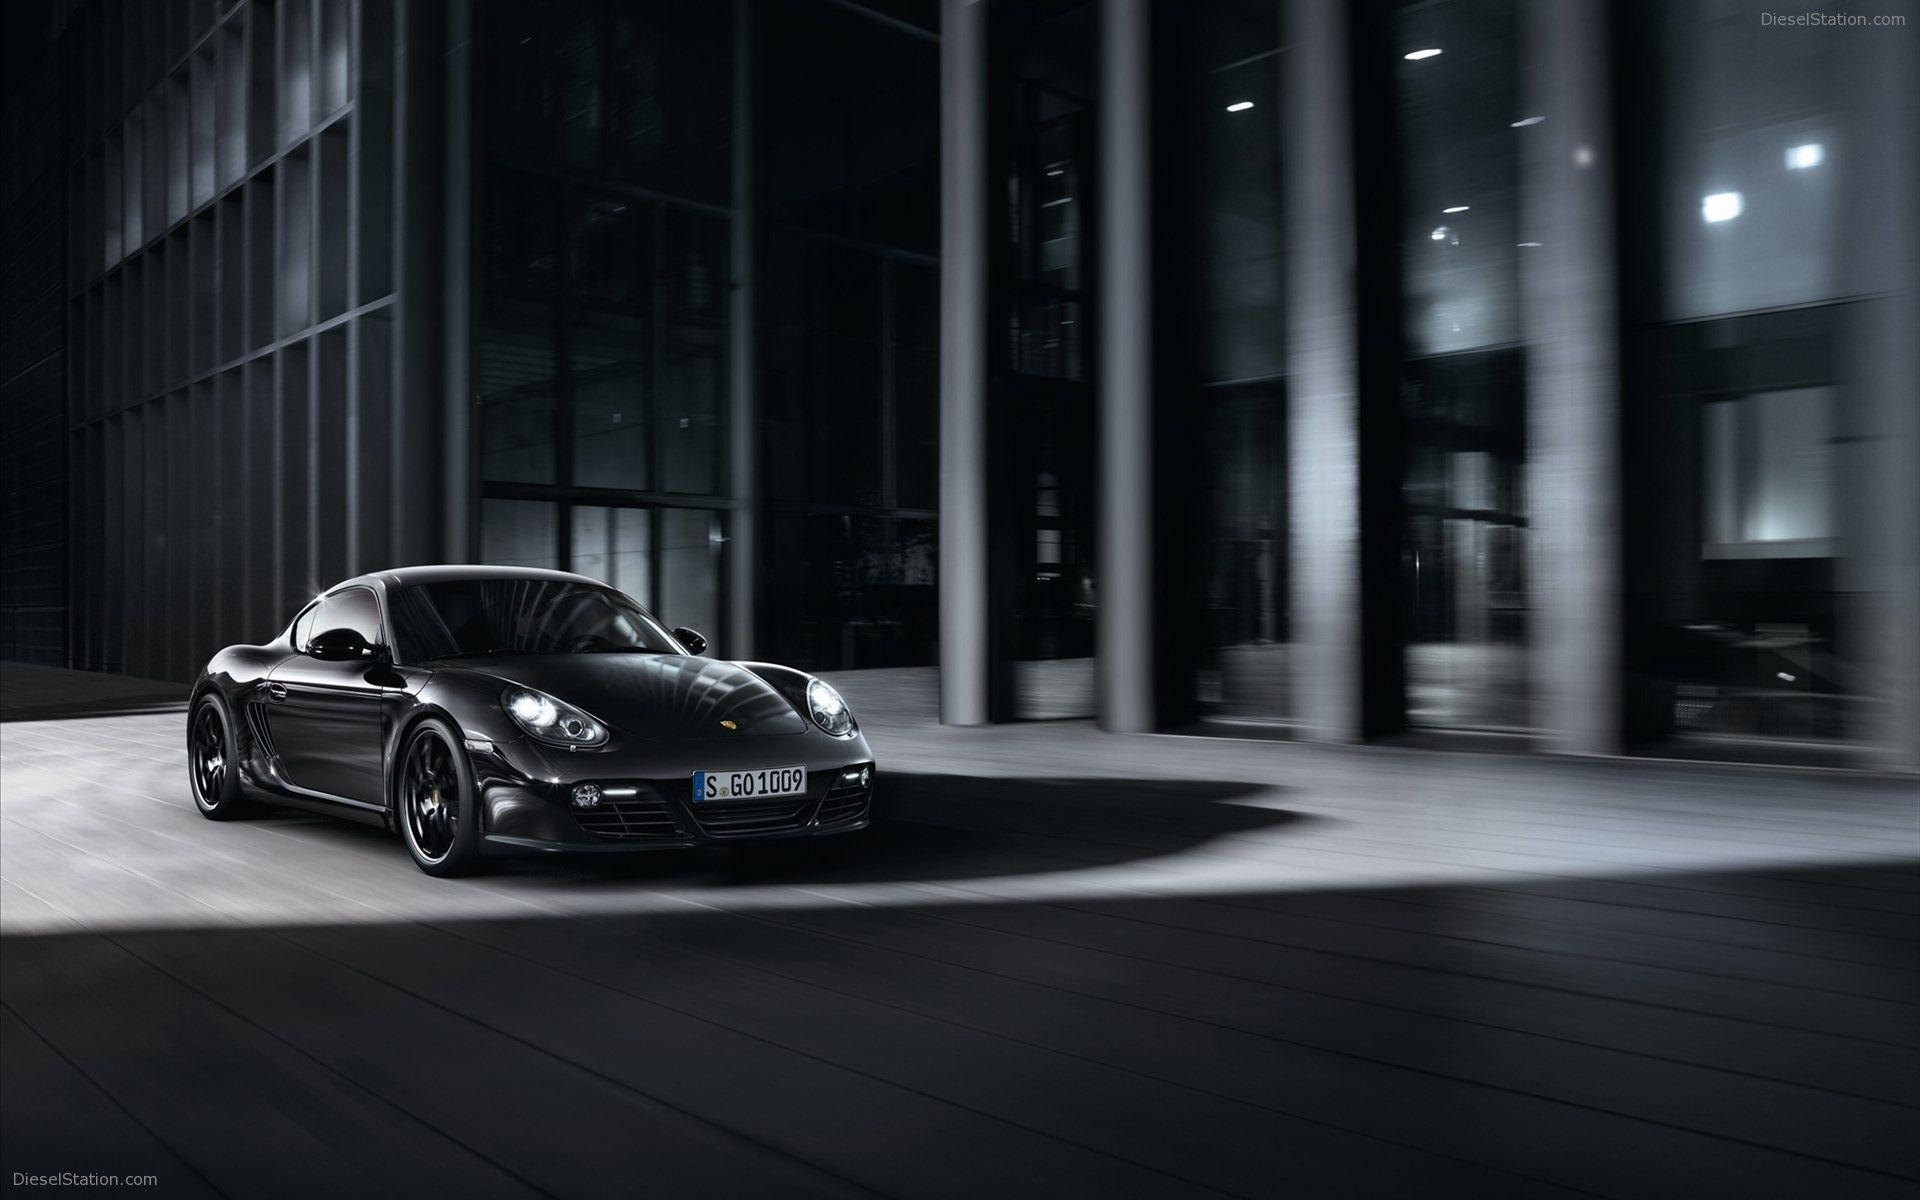 Porsche Cayman S Black Edition 2012 Widescreen Exotic Car